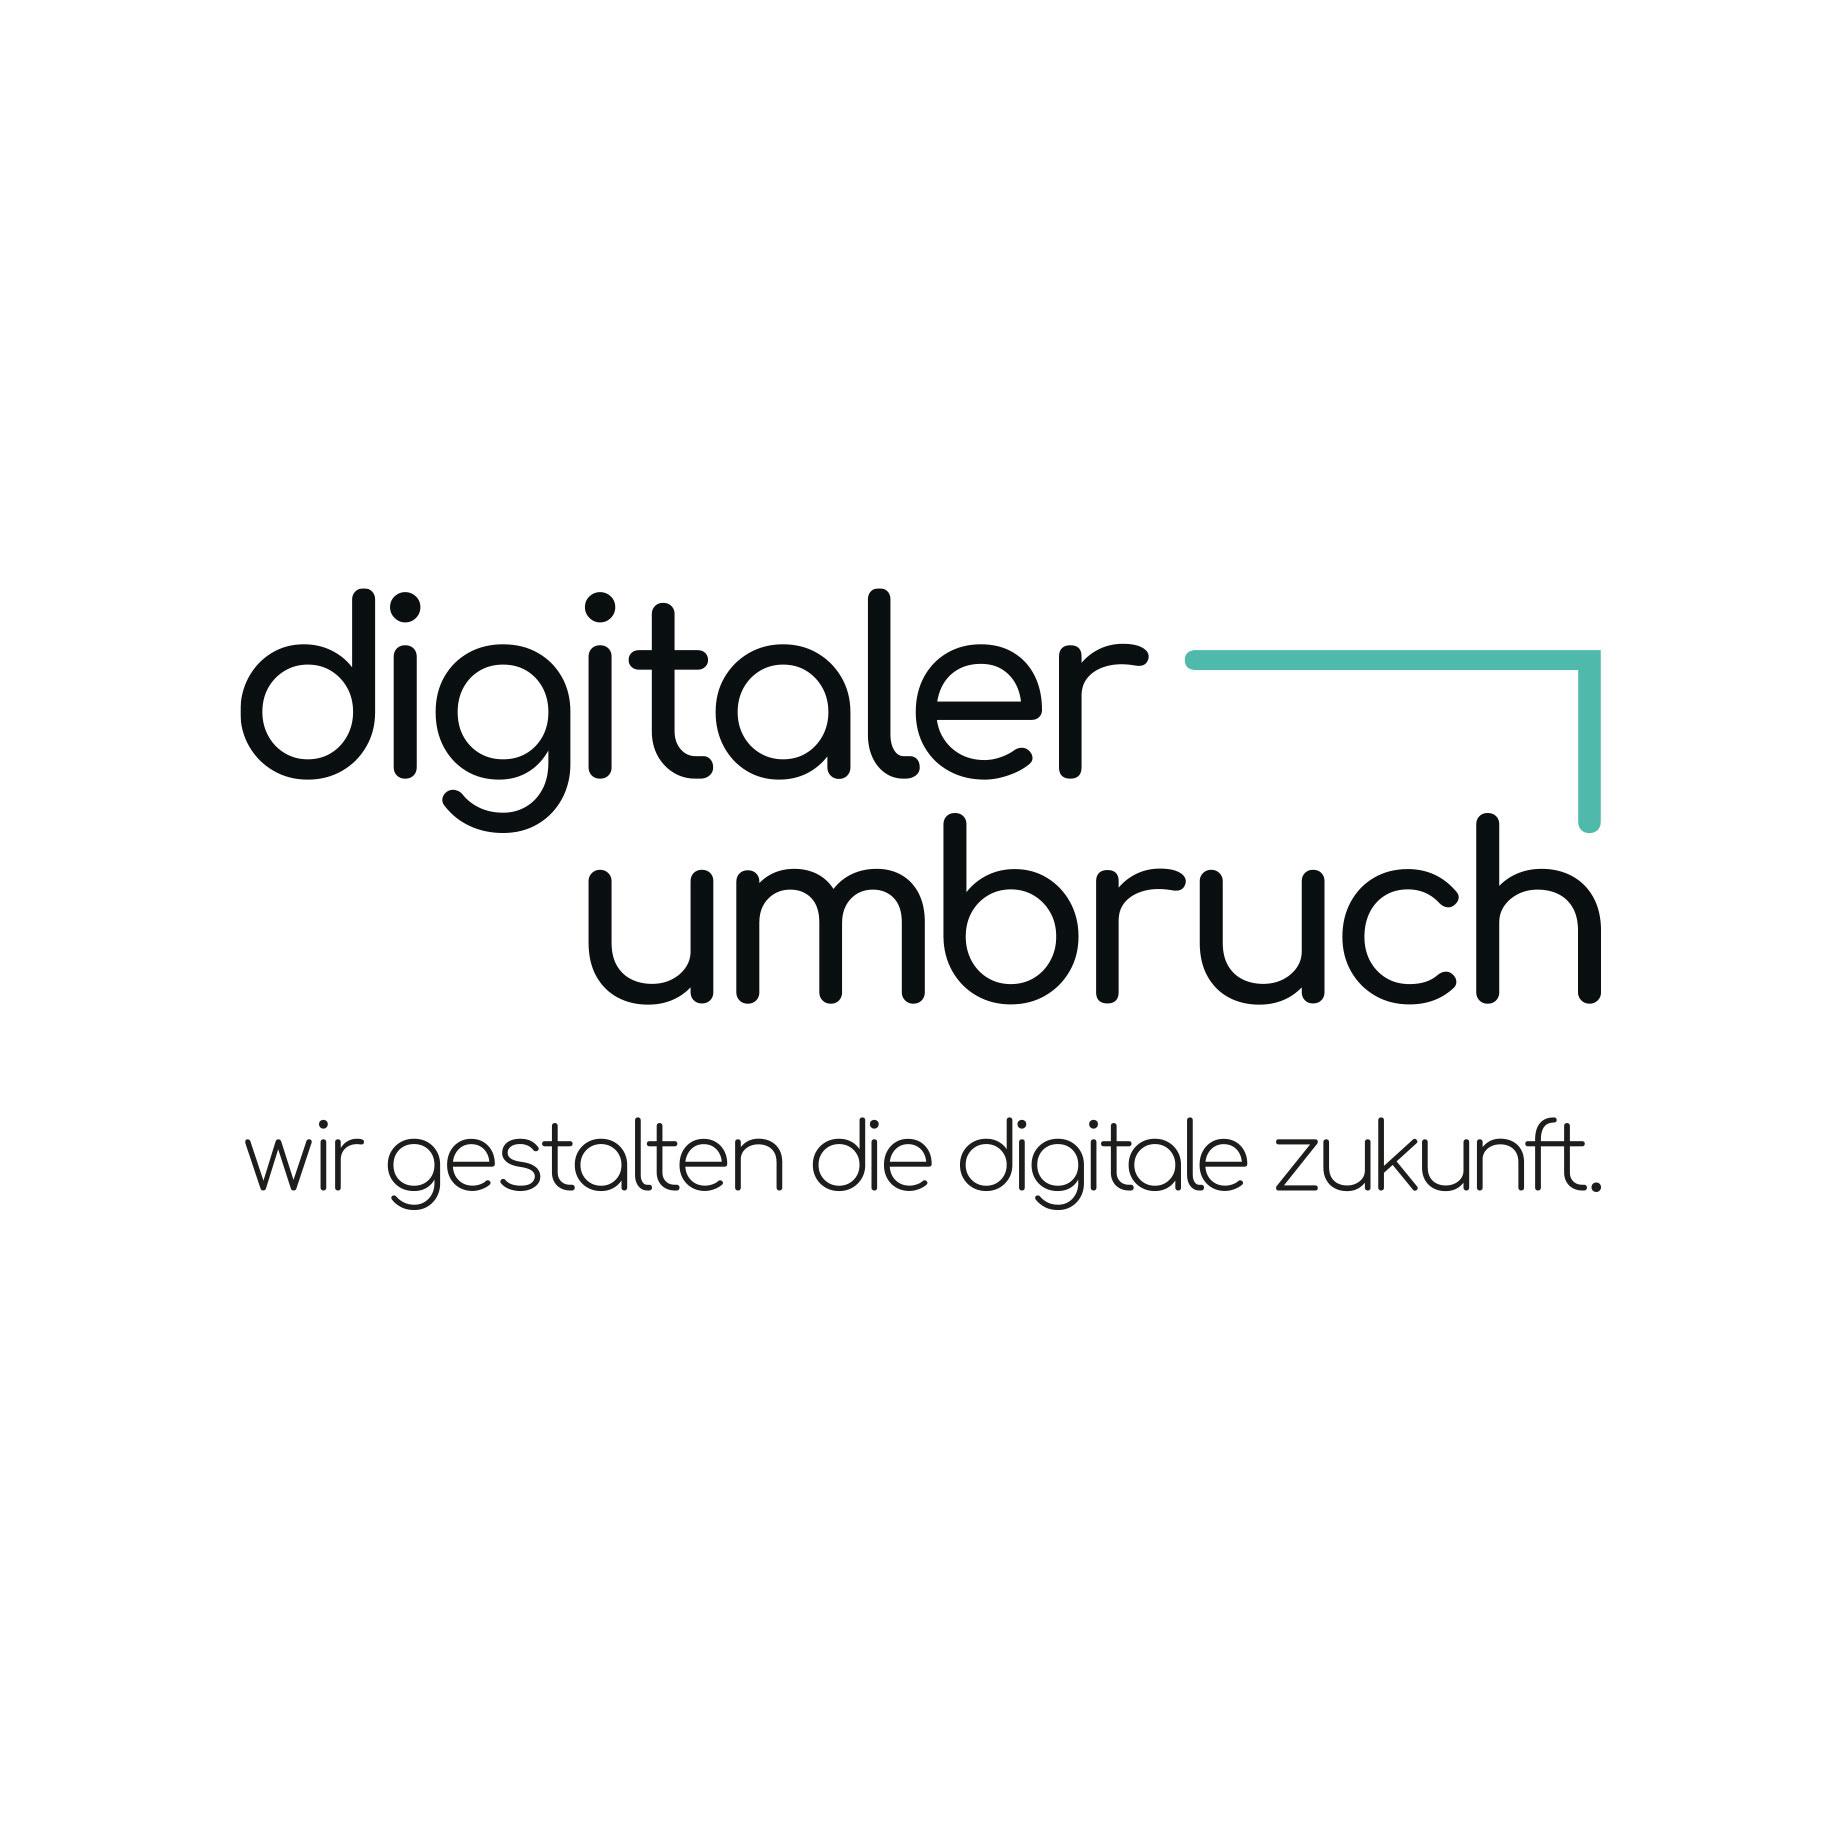 Umbruch - Agentur für digitale Transformation GmbH Logo